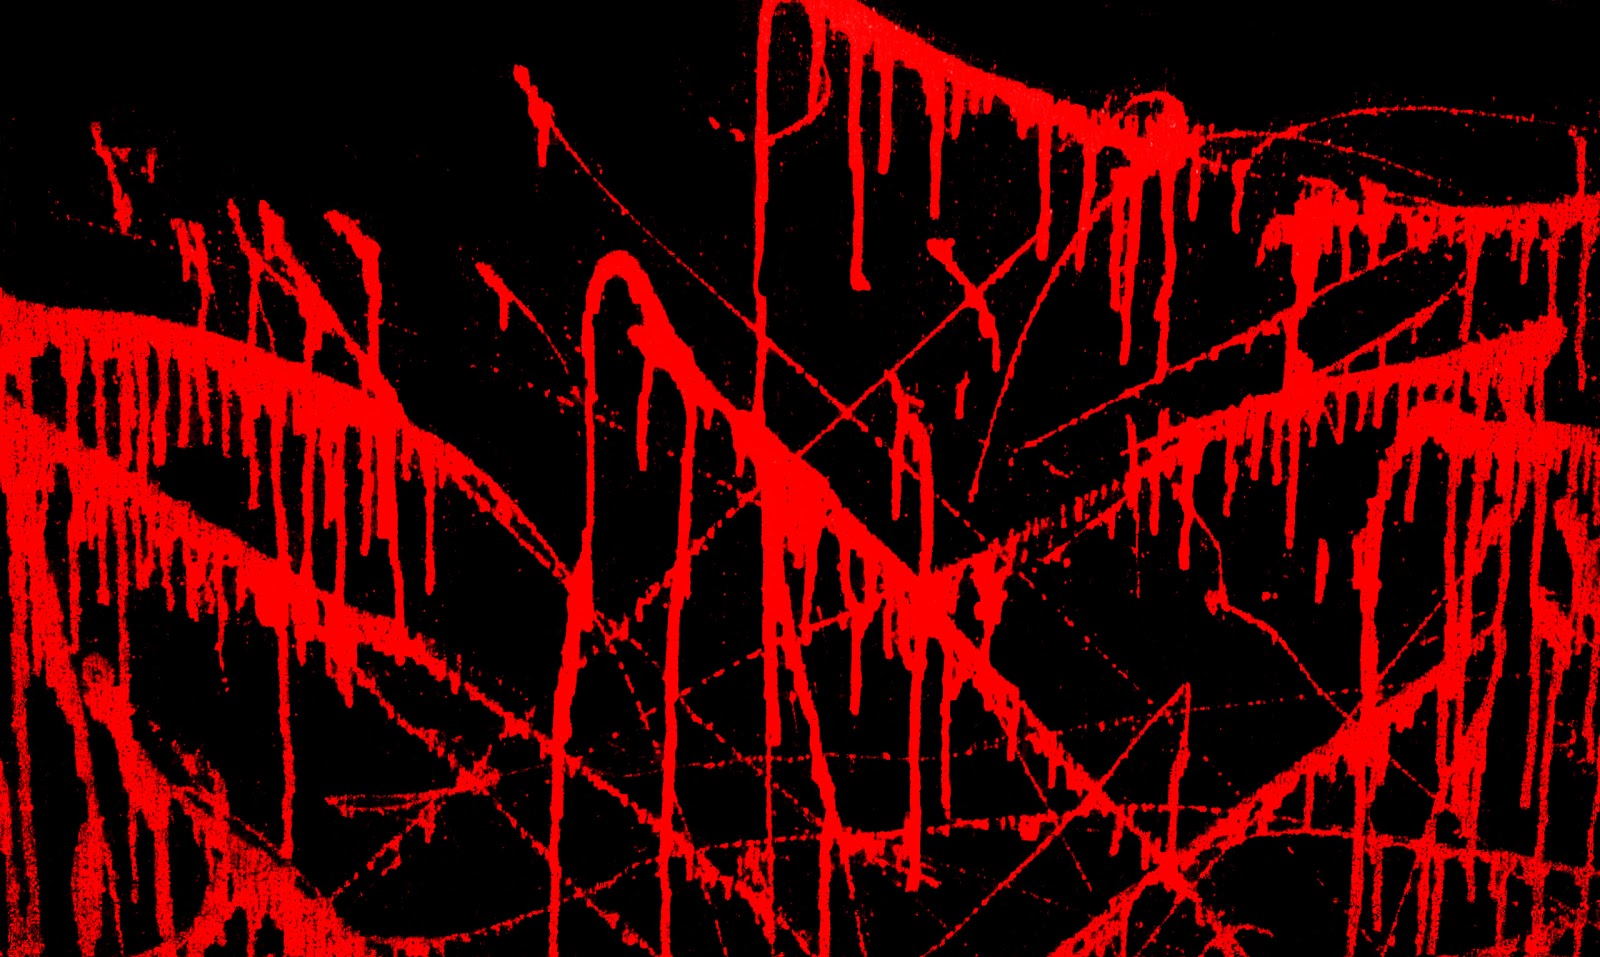 Dexter Wallpaper Blood Splatter - WallpaperSafari